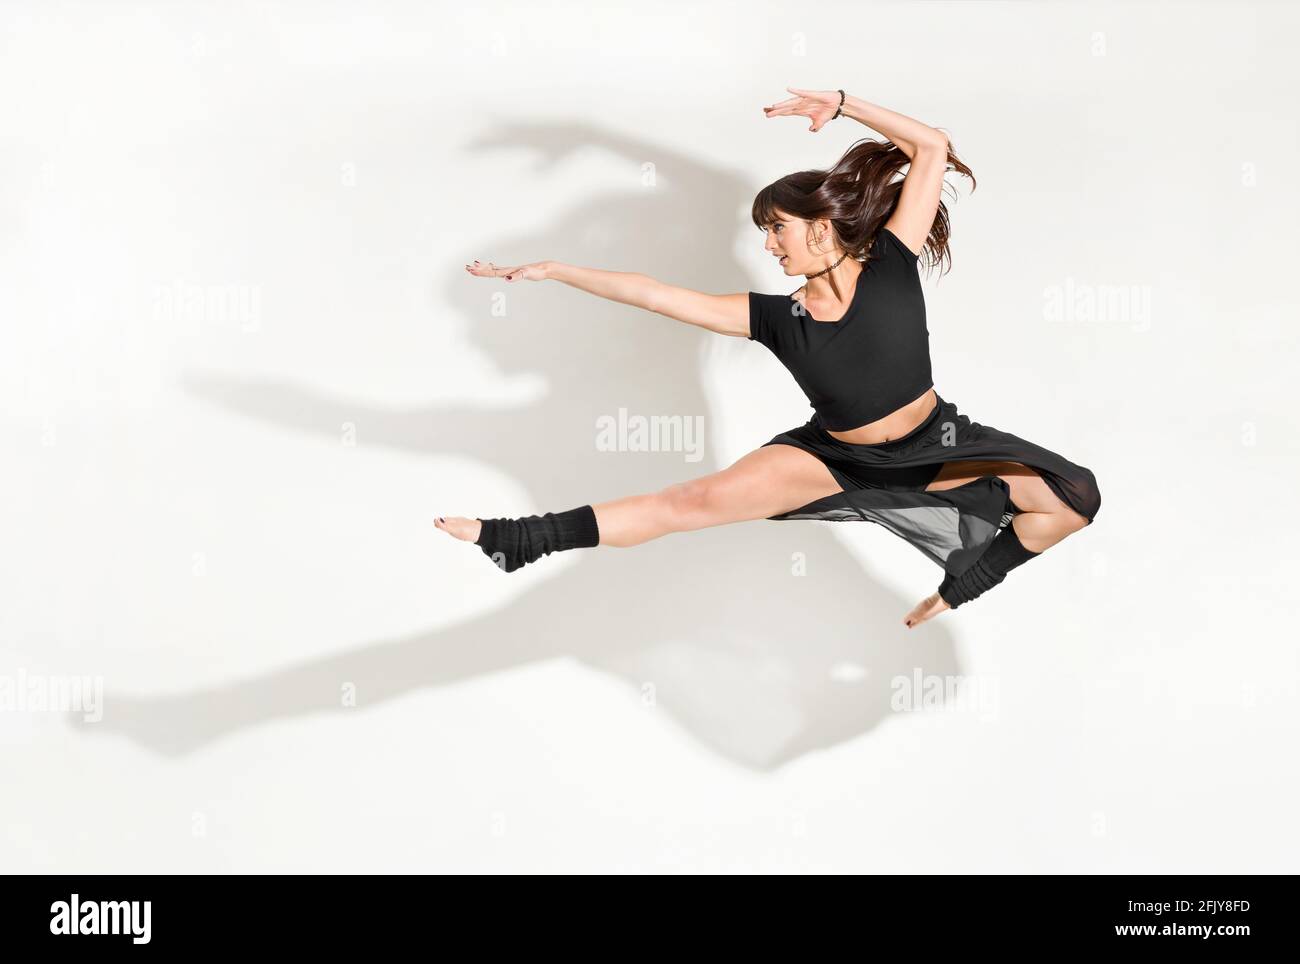 Giovane ballerina agile che esegue un salto frontale semi-diviso con i capelli lunghi che volano in una posa a mezz'aria isolata sopra bianco con ombra drammatica e copyspac Foto Stock